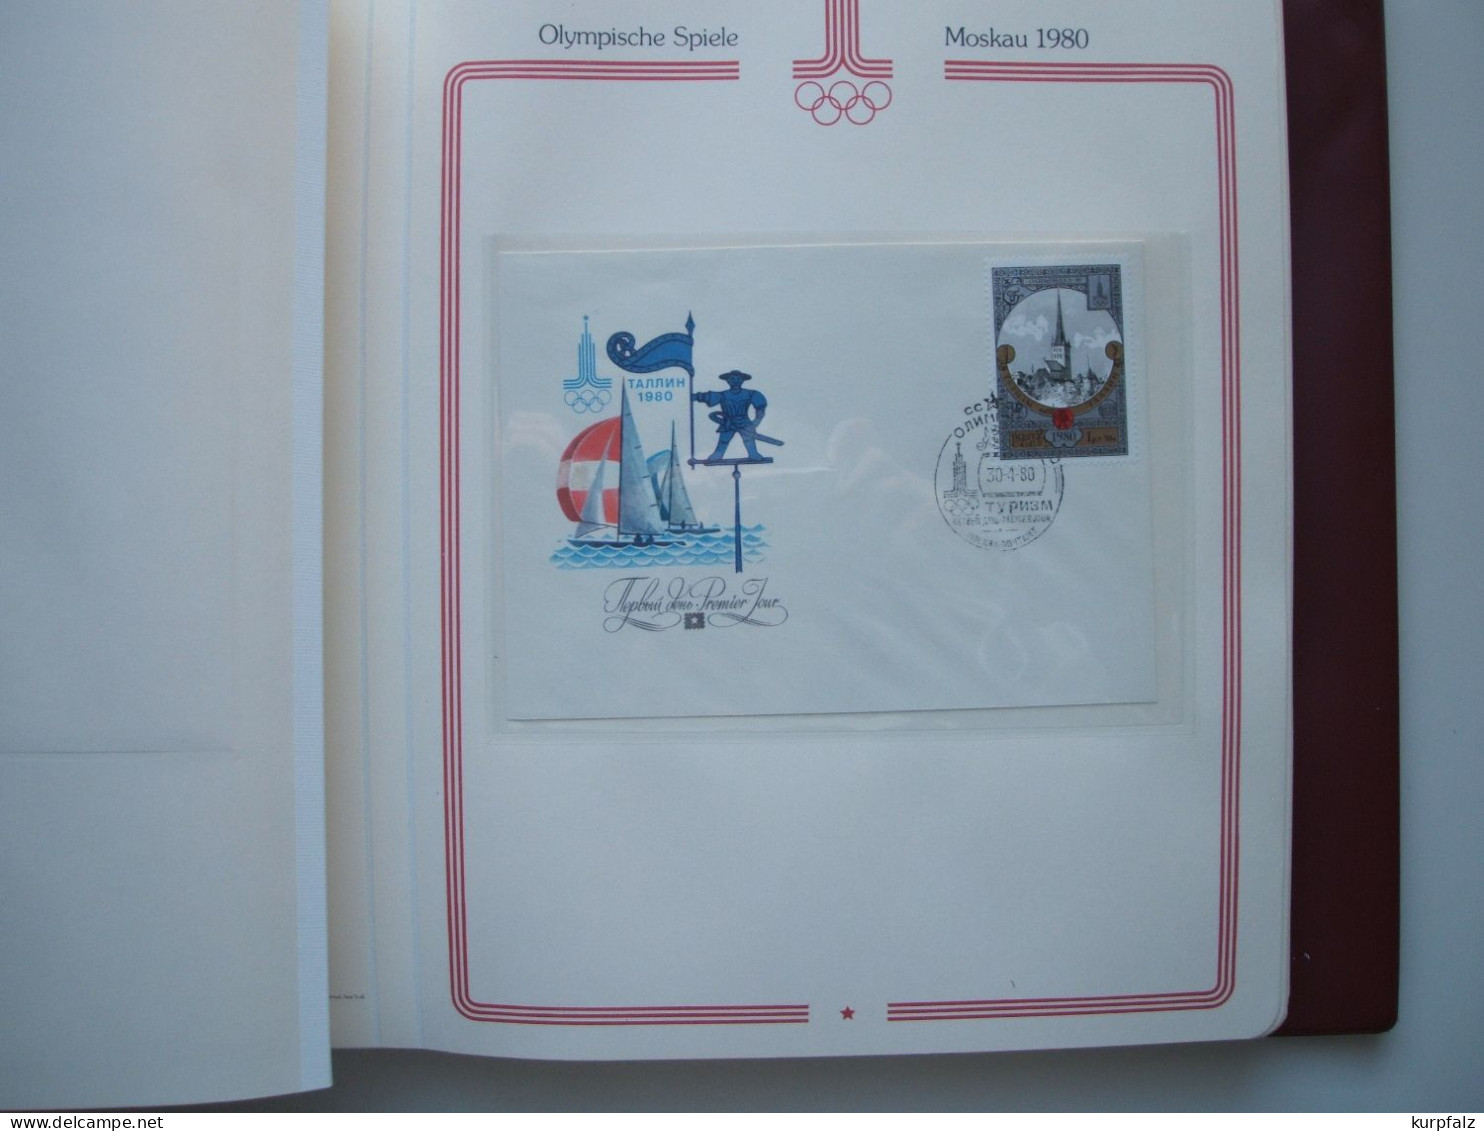 Olympische Spiele Moskau 1980 - über 40 Sowjet-Briefe mit SSt. im Borek-Album